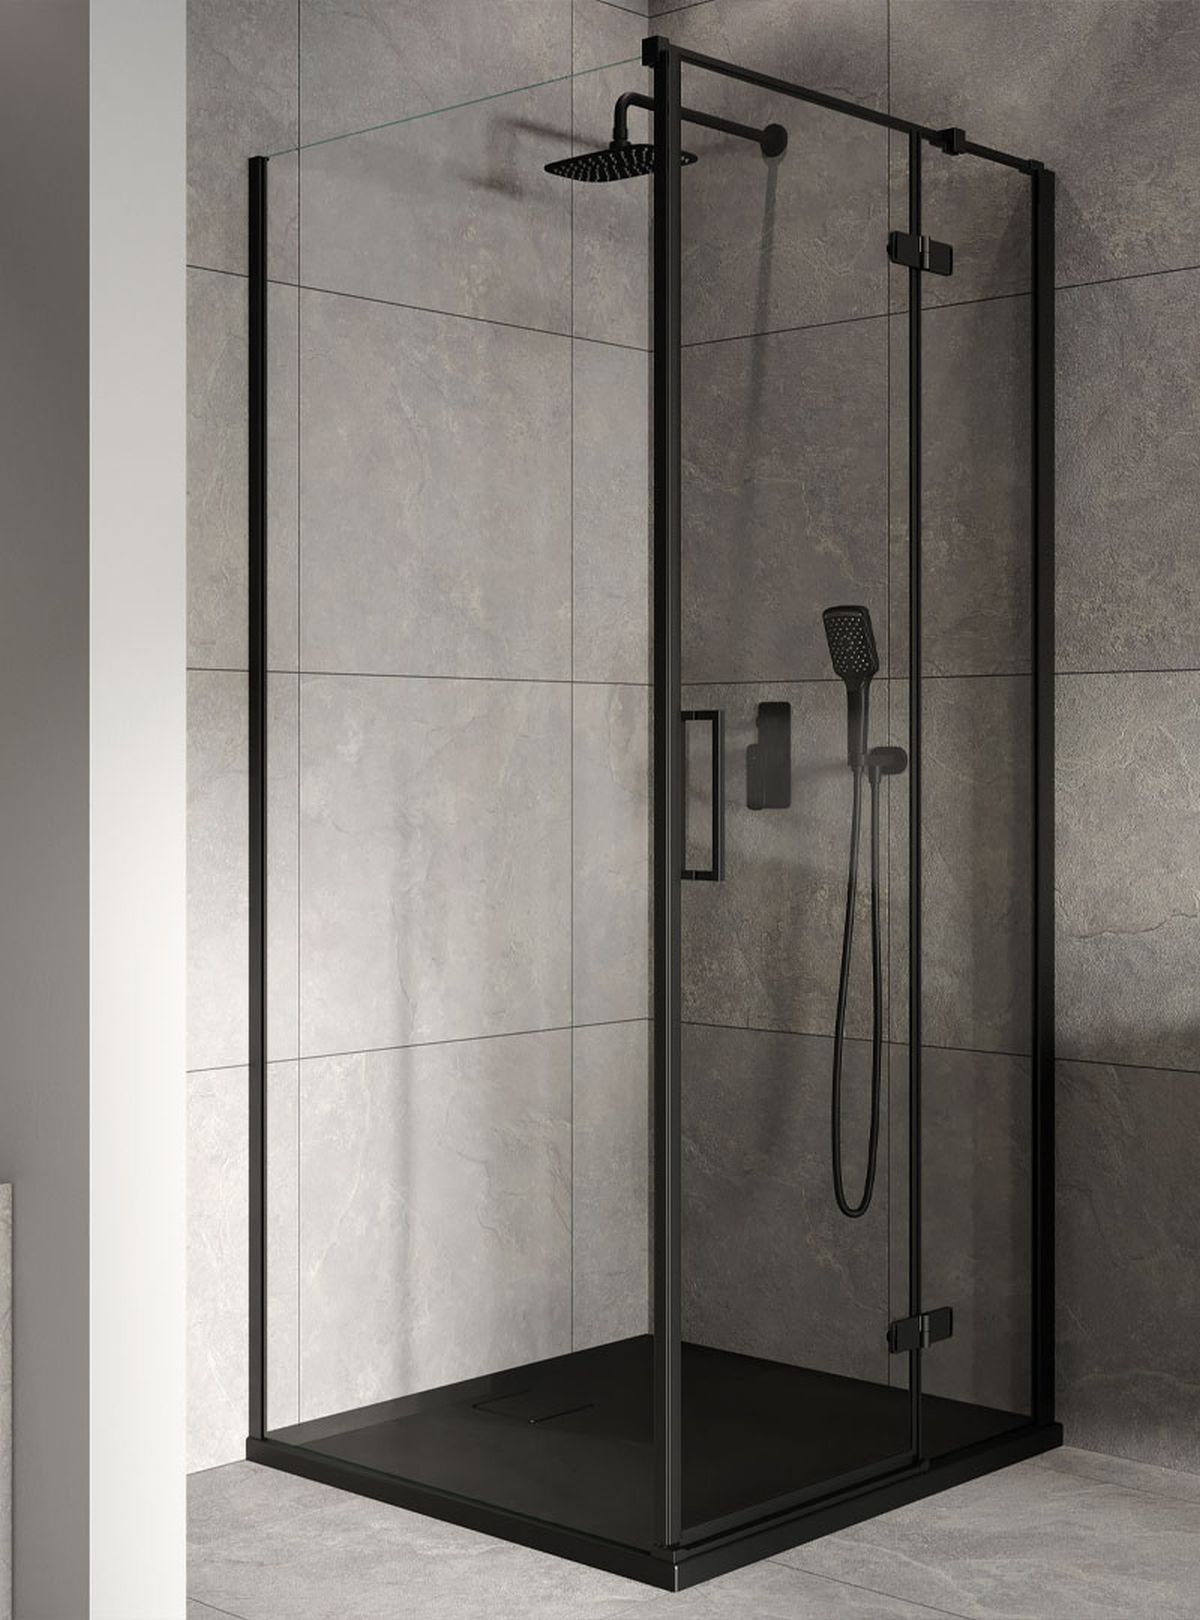 Cabină de duș și panouri de duș cu profile negre modele Jota de la Cersanit. Sunt disponibile la preț redus până pe 5 august. Vedeți toate modele de cabine și de panouri, dimensiuni și prețuri AICI.